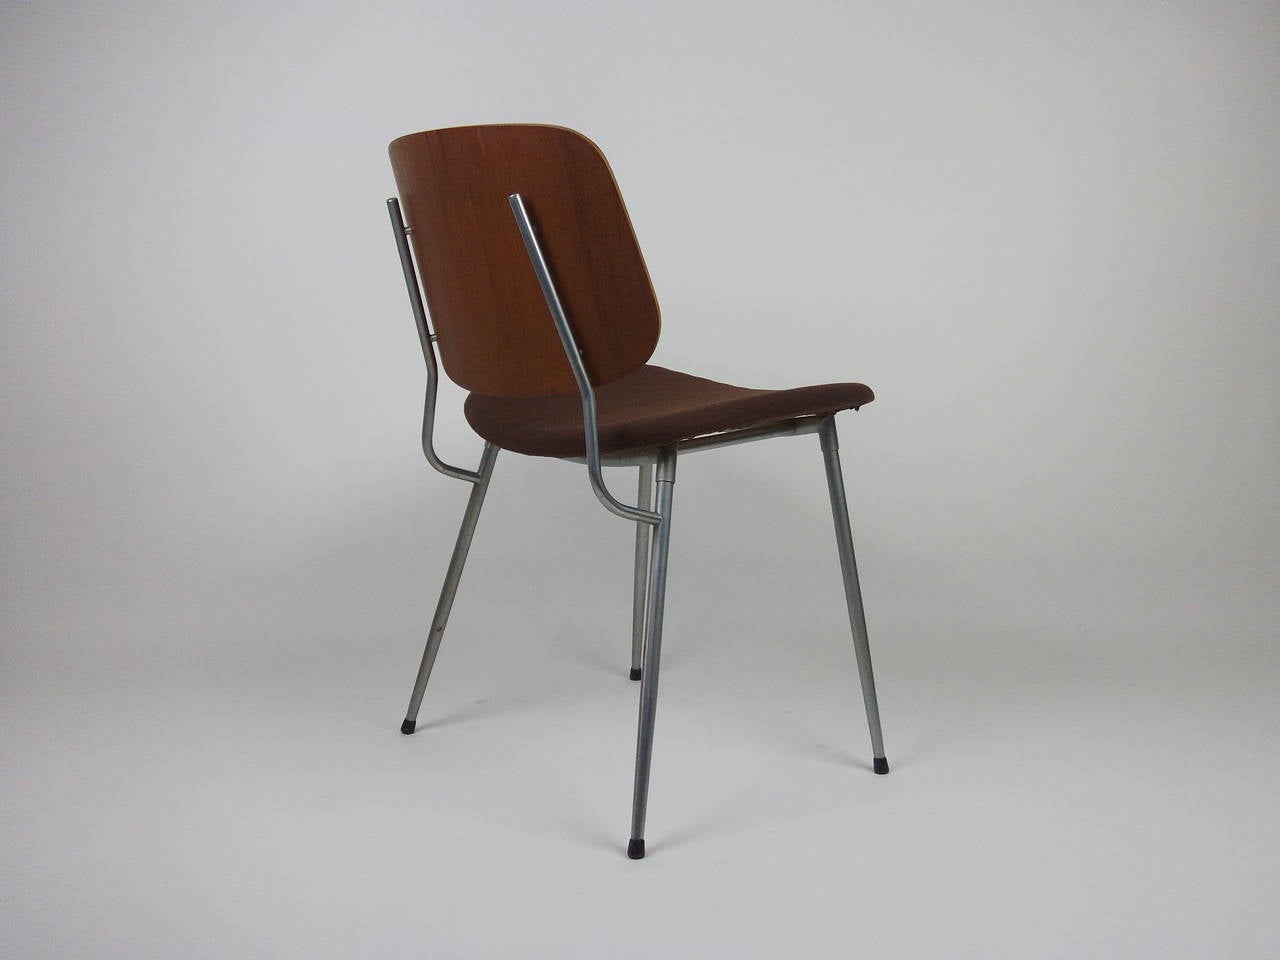 Danish 1950s Børge Mogensen Desk Chair For Sale